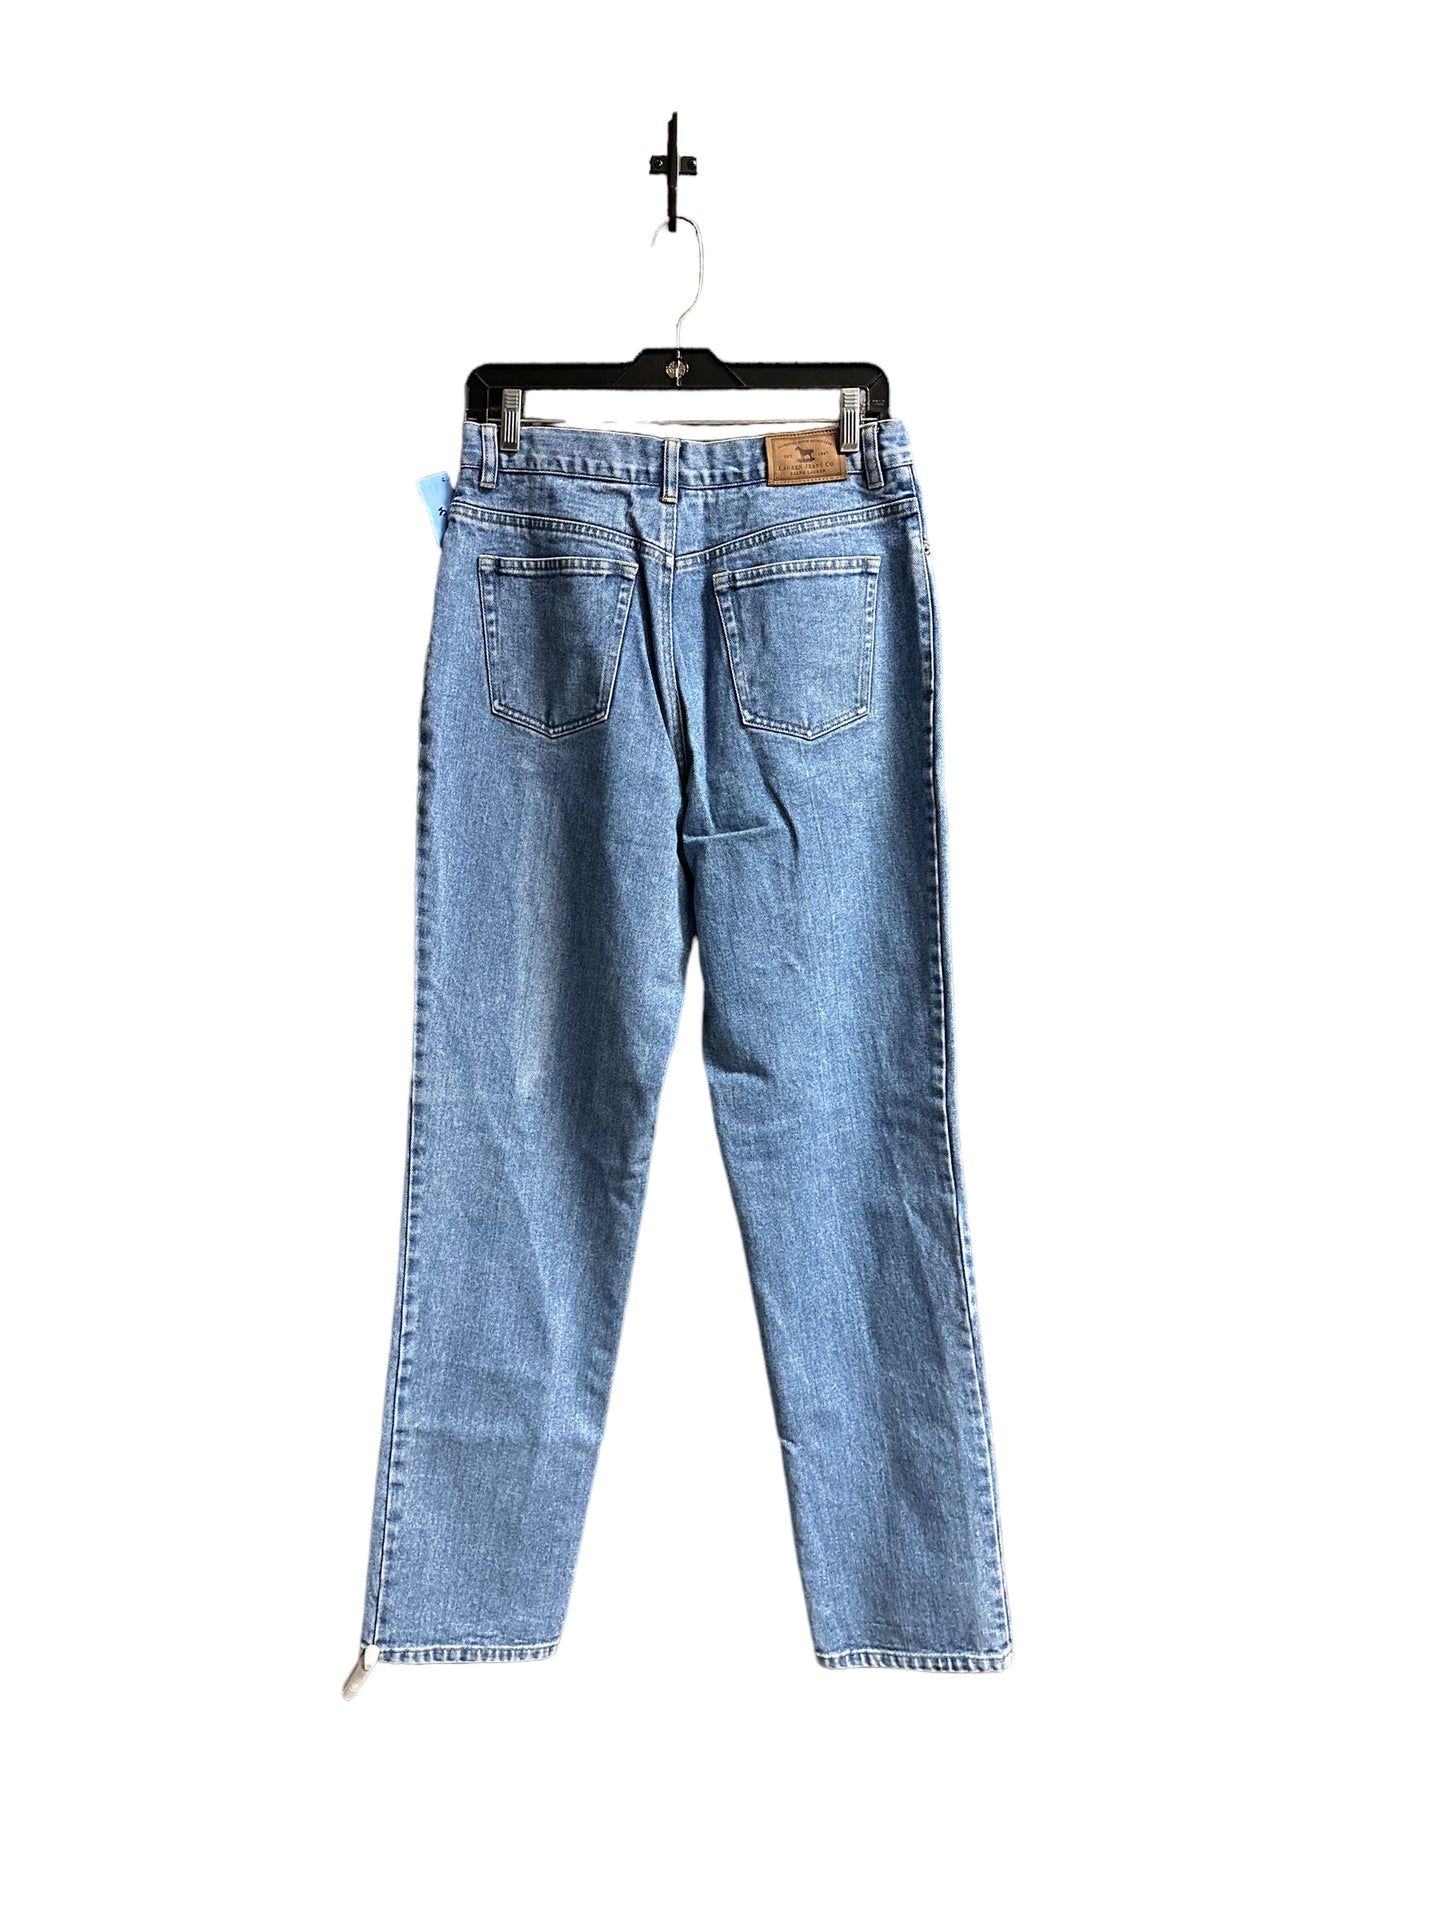 Jeans Relaxed/boyfriend By Ralph Lauren Co  Size: 8